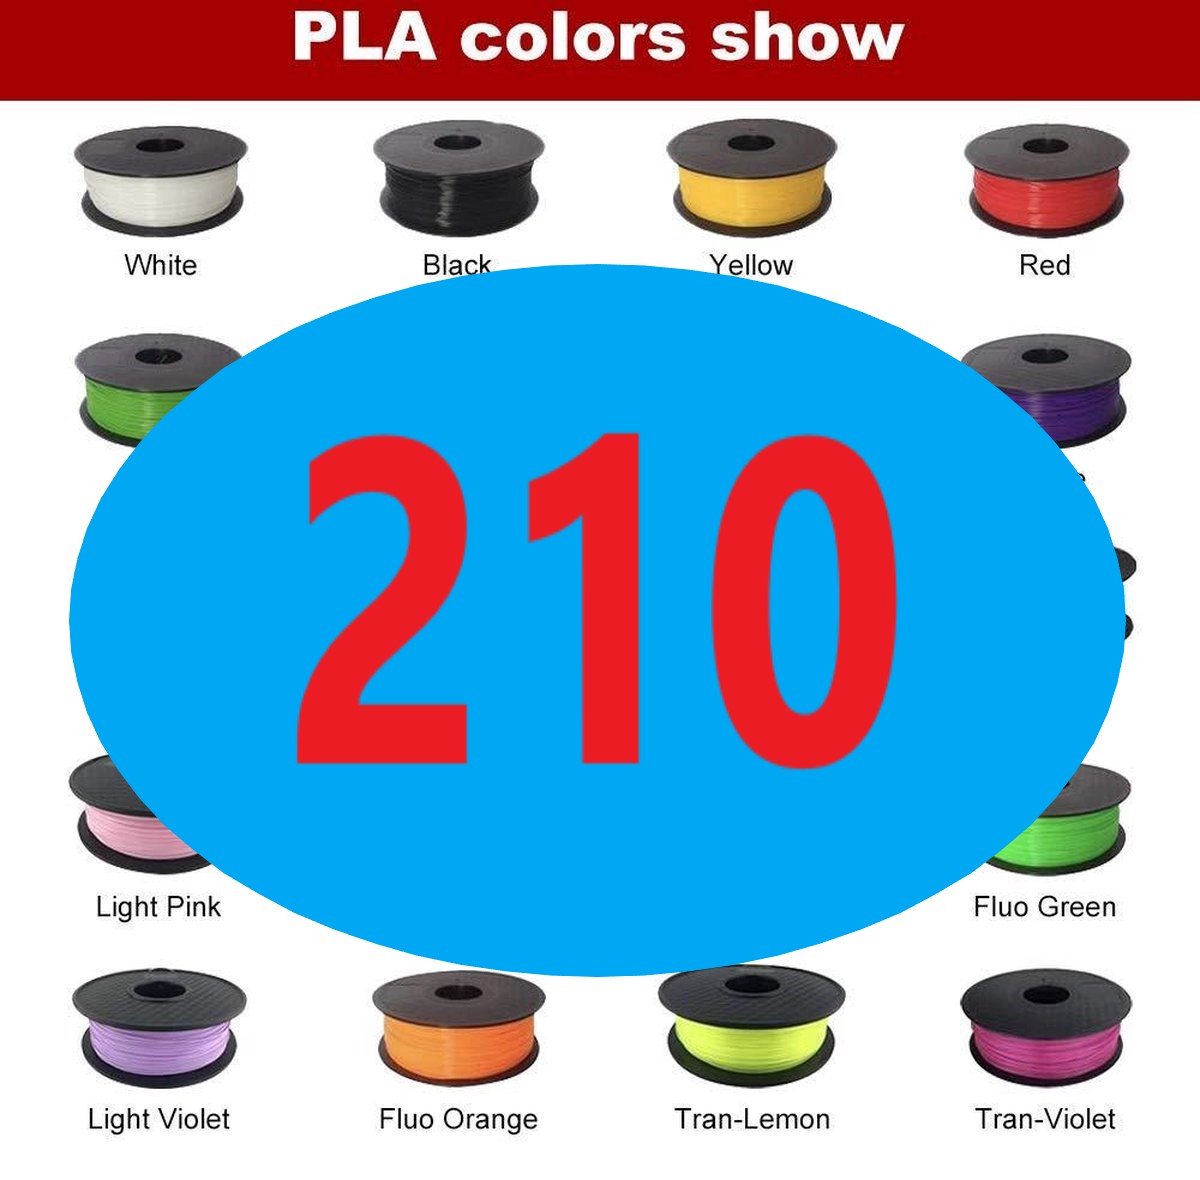 YEMCreative® PLA 3D Pen NaVulling - PLA Filament - 3D pen vullingen - 22  kleuren - 3D